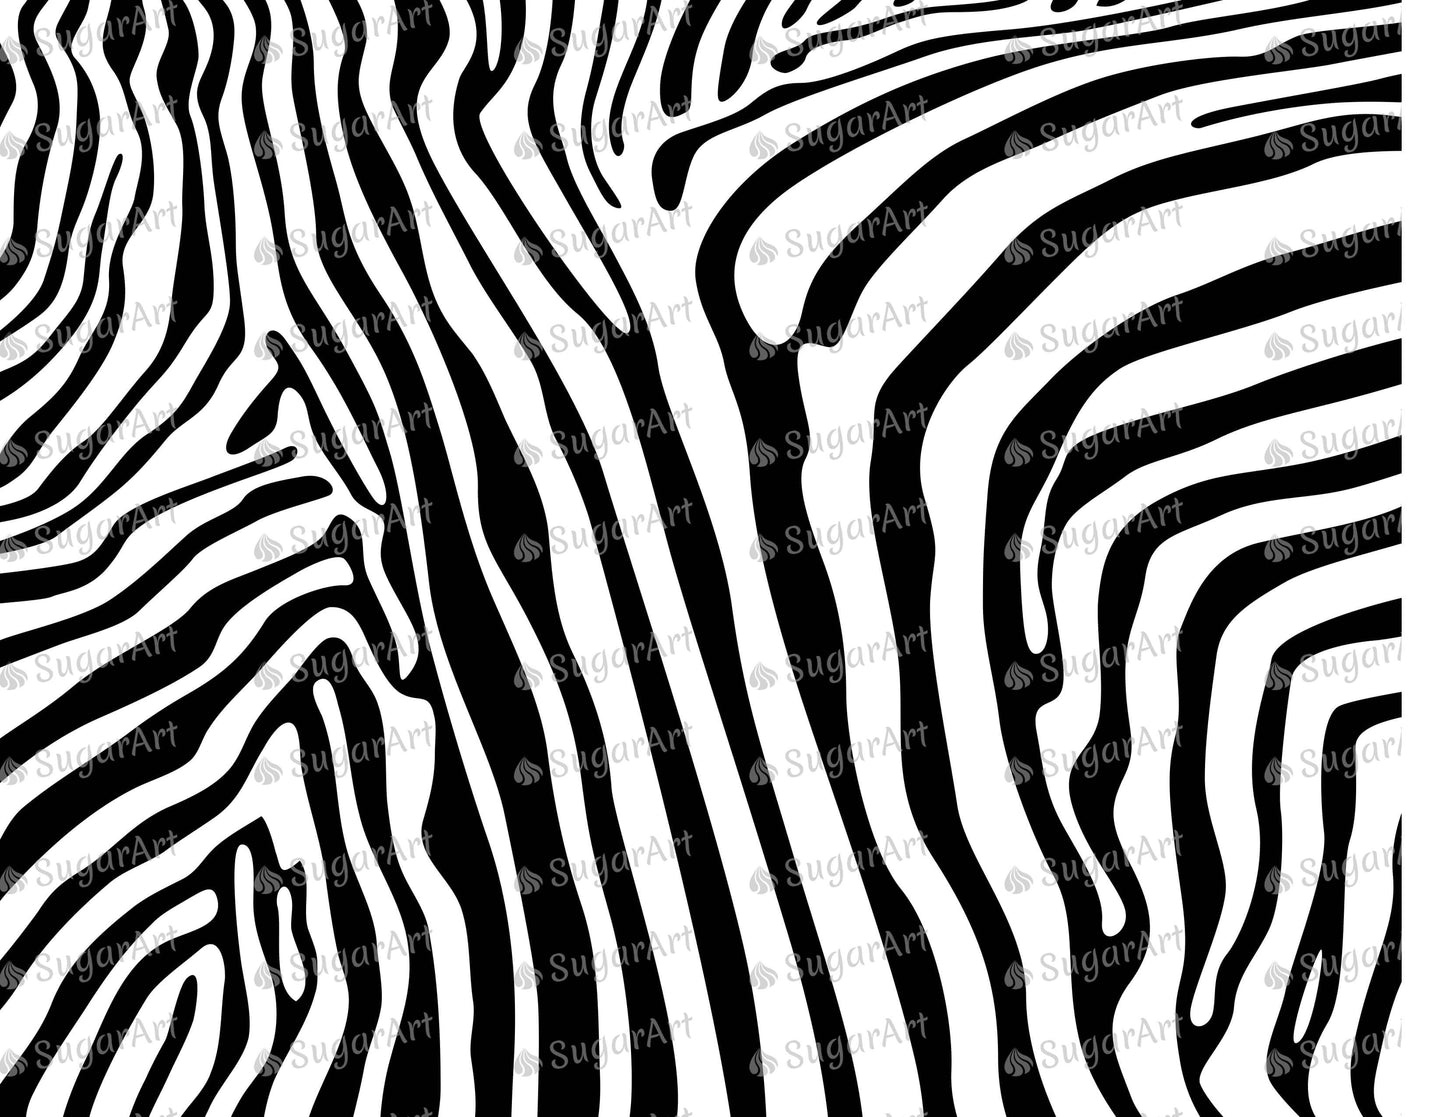 Zebra Stripes Print - Icing - ISA112.